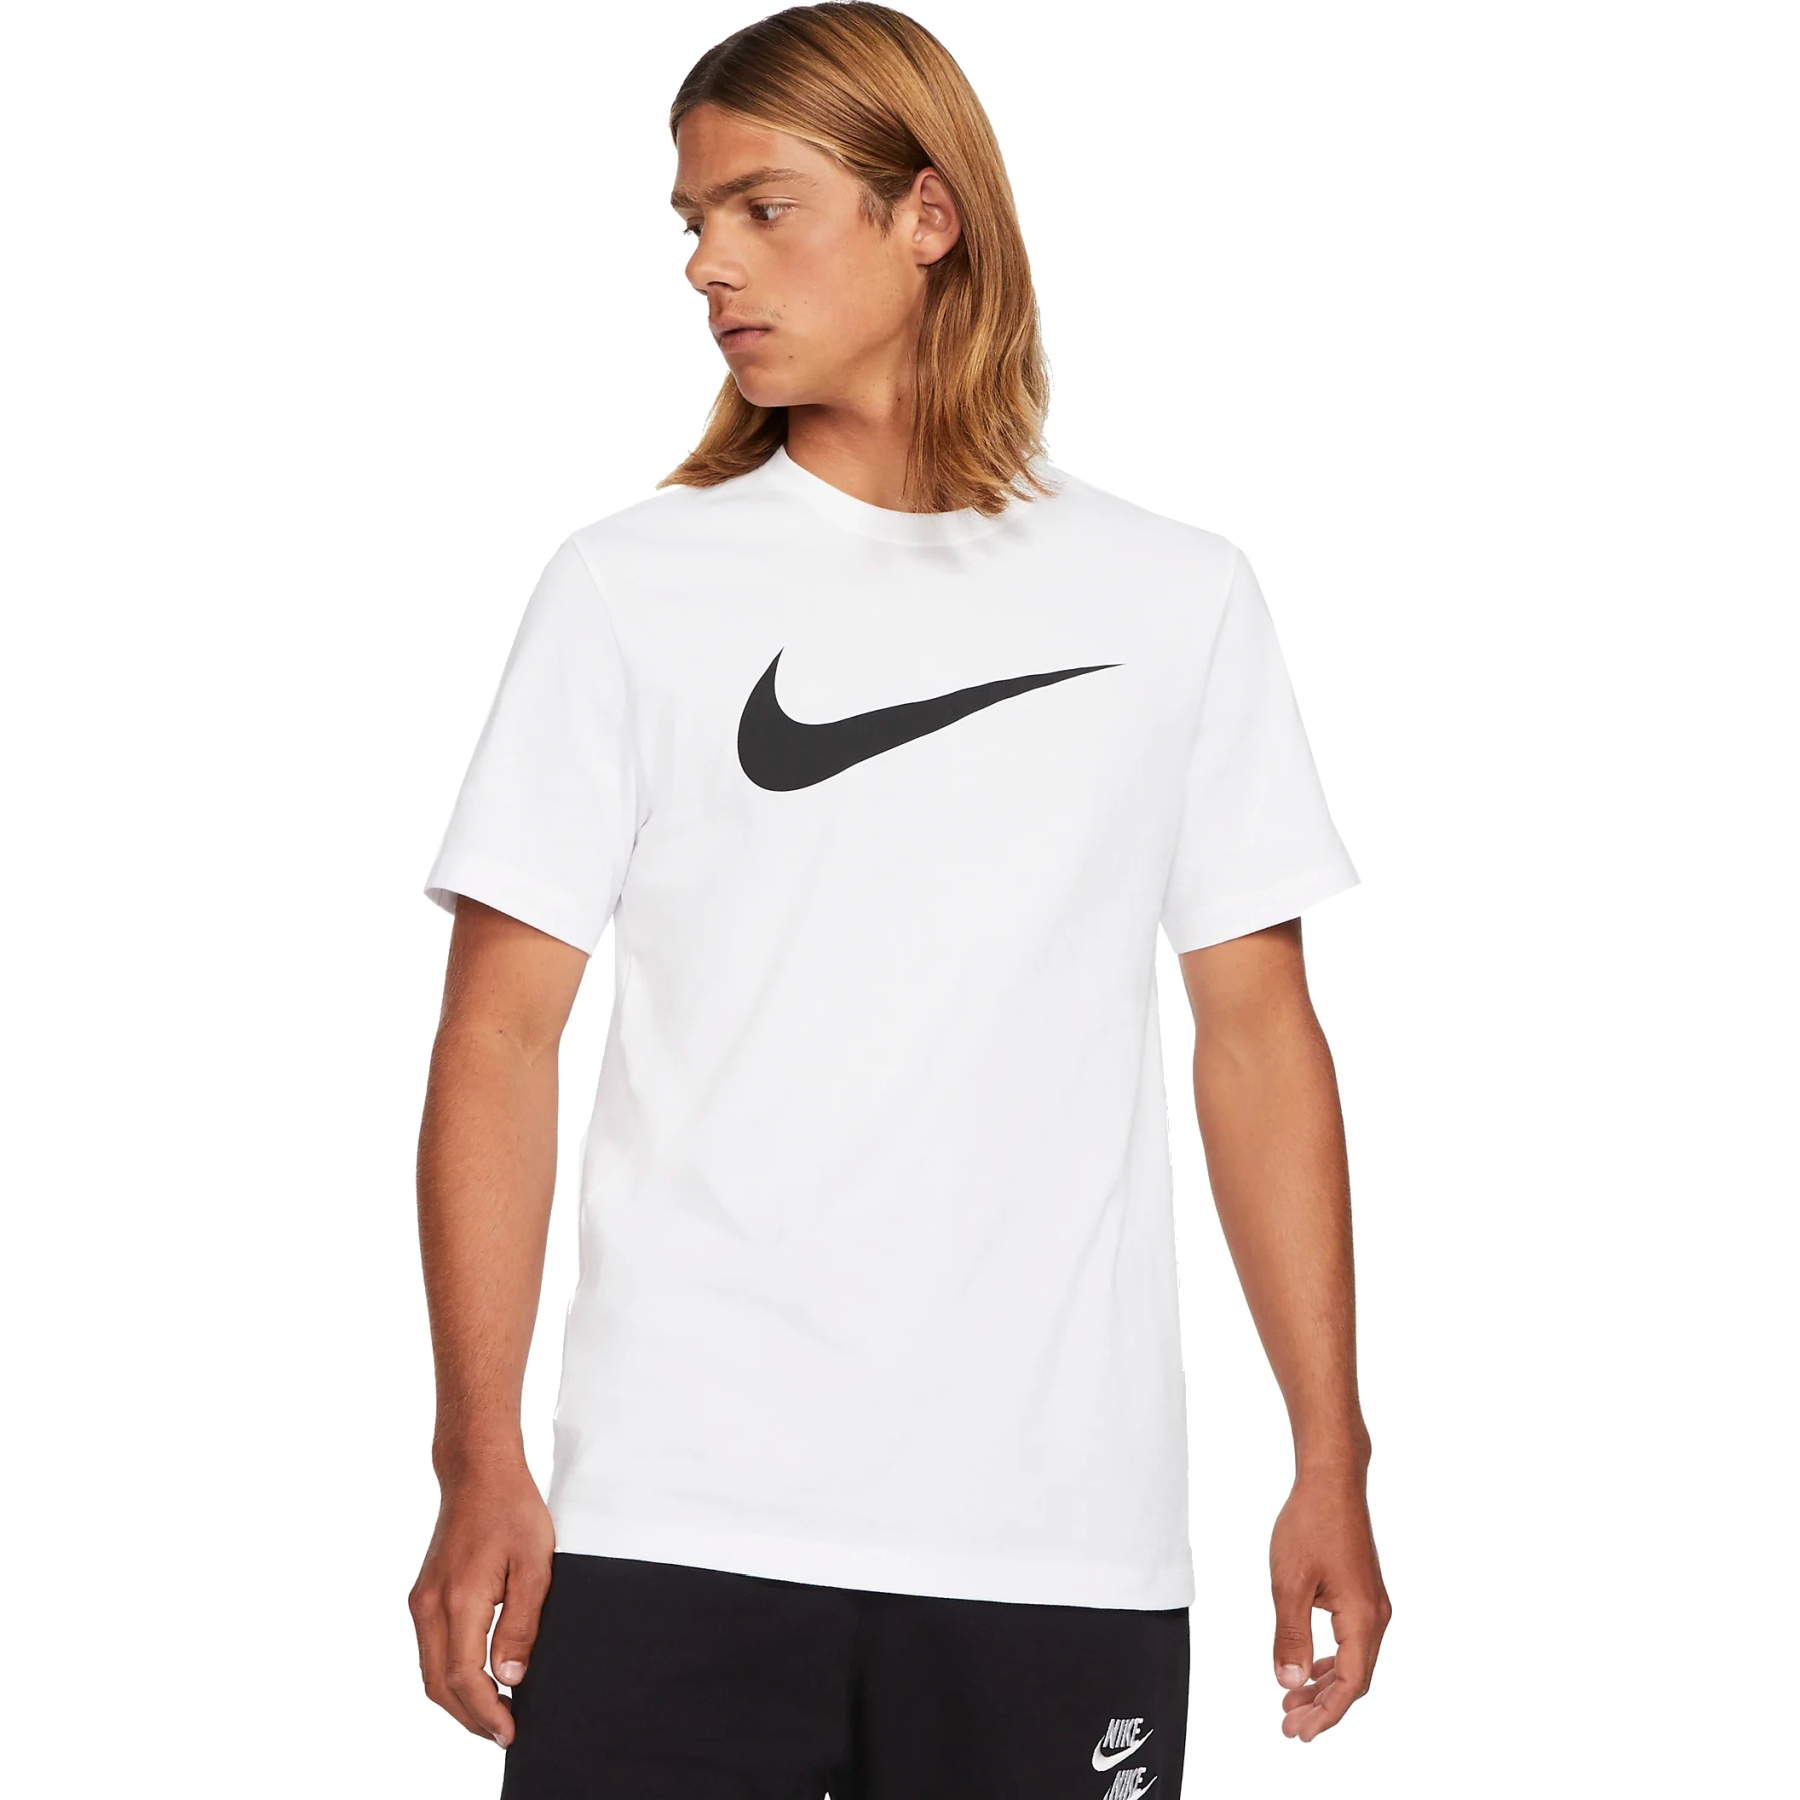 Produktbild von Nike Sportswear Swoosh T-Shirt Herren - weiß/schwarz DC5094-100